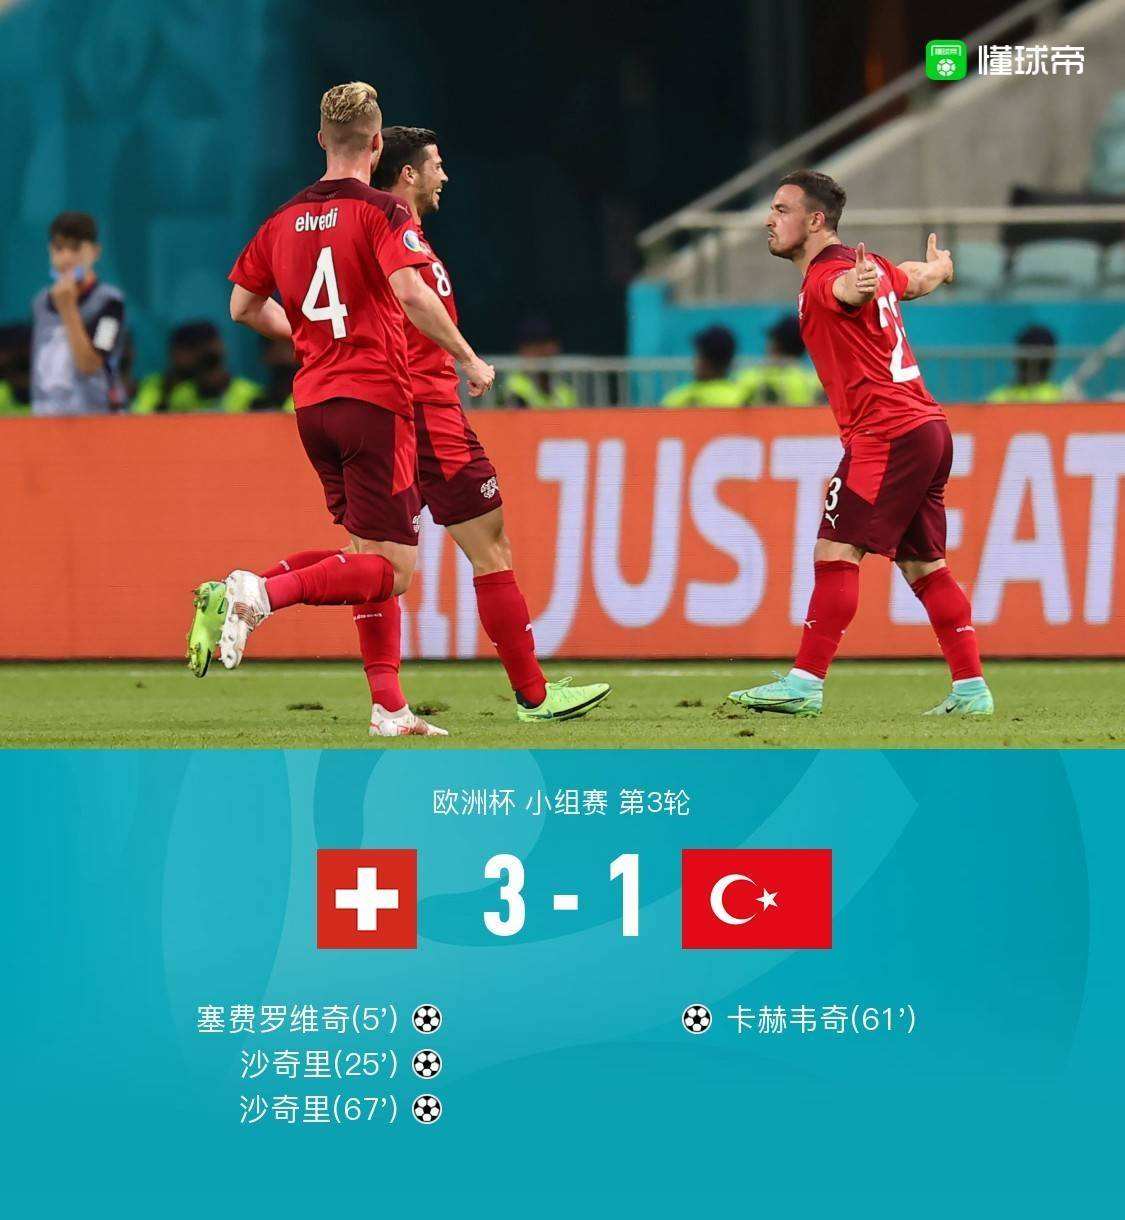 瑞士VS土耳其 瑞士vs土耳其历史战绩